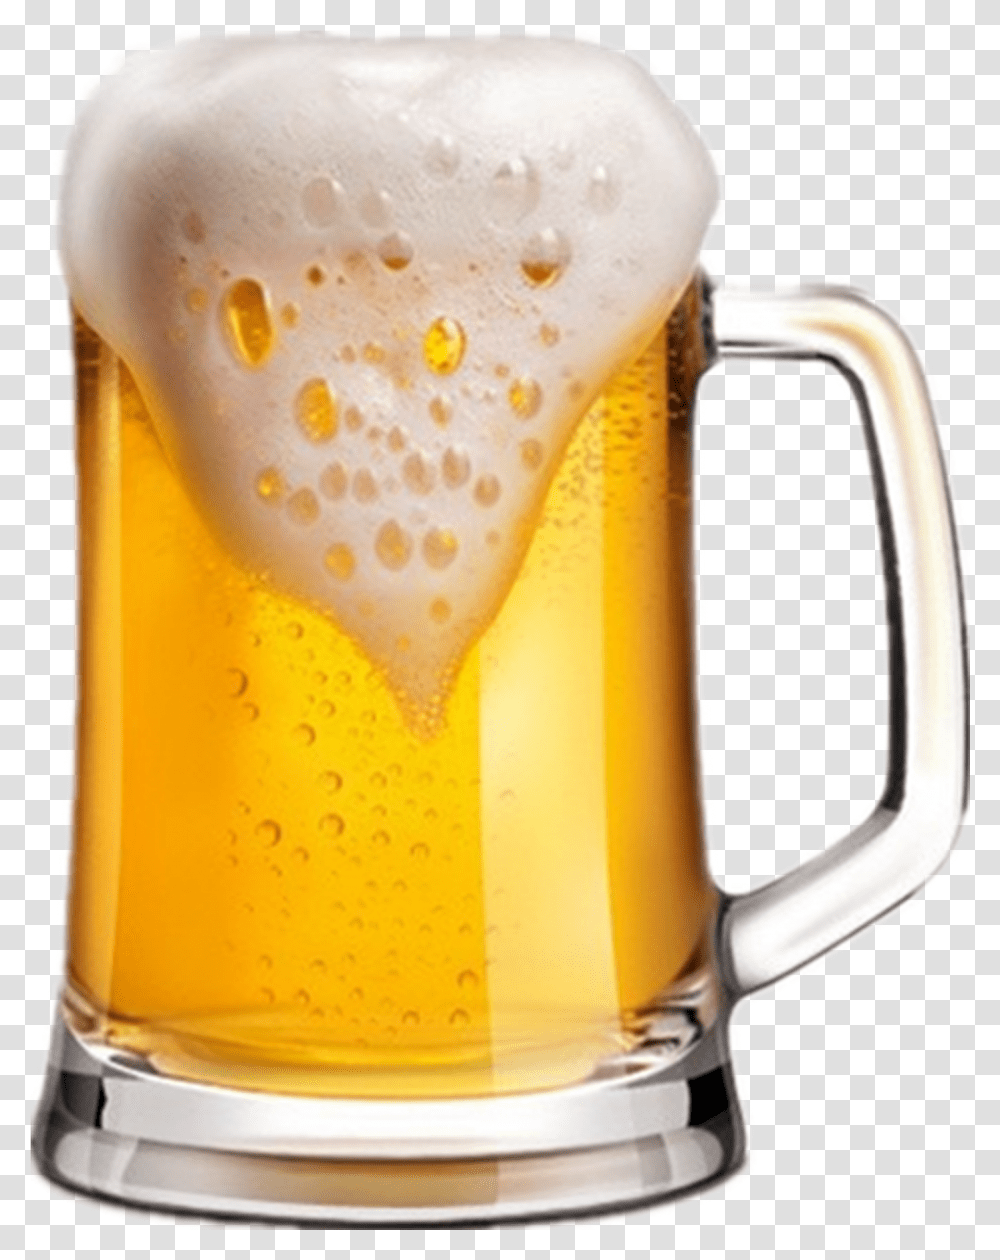 Glass Of Beer, Beer Glass, Alcohol, Beverage, Drink Transparent Png